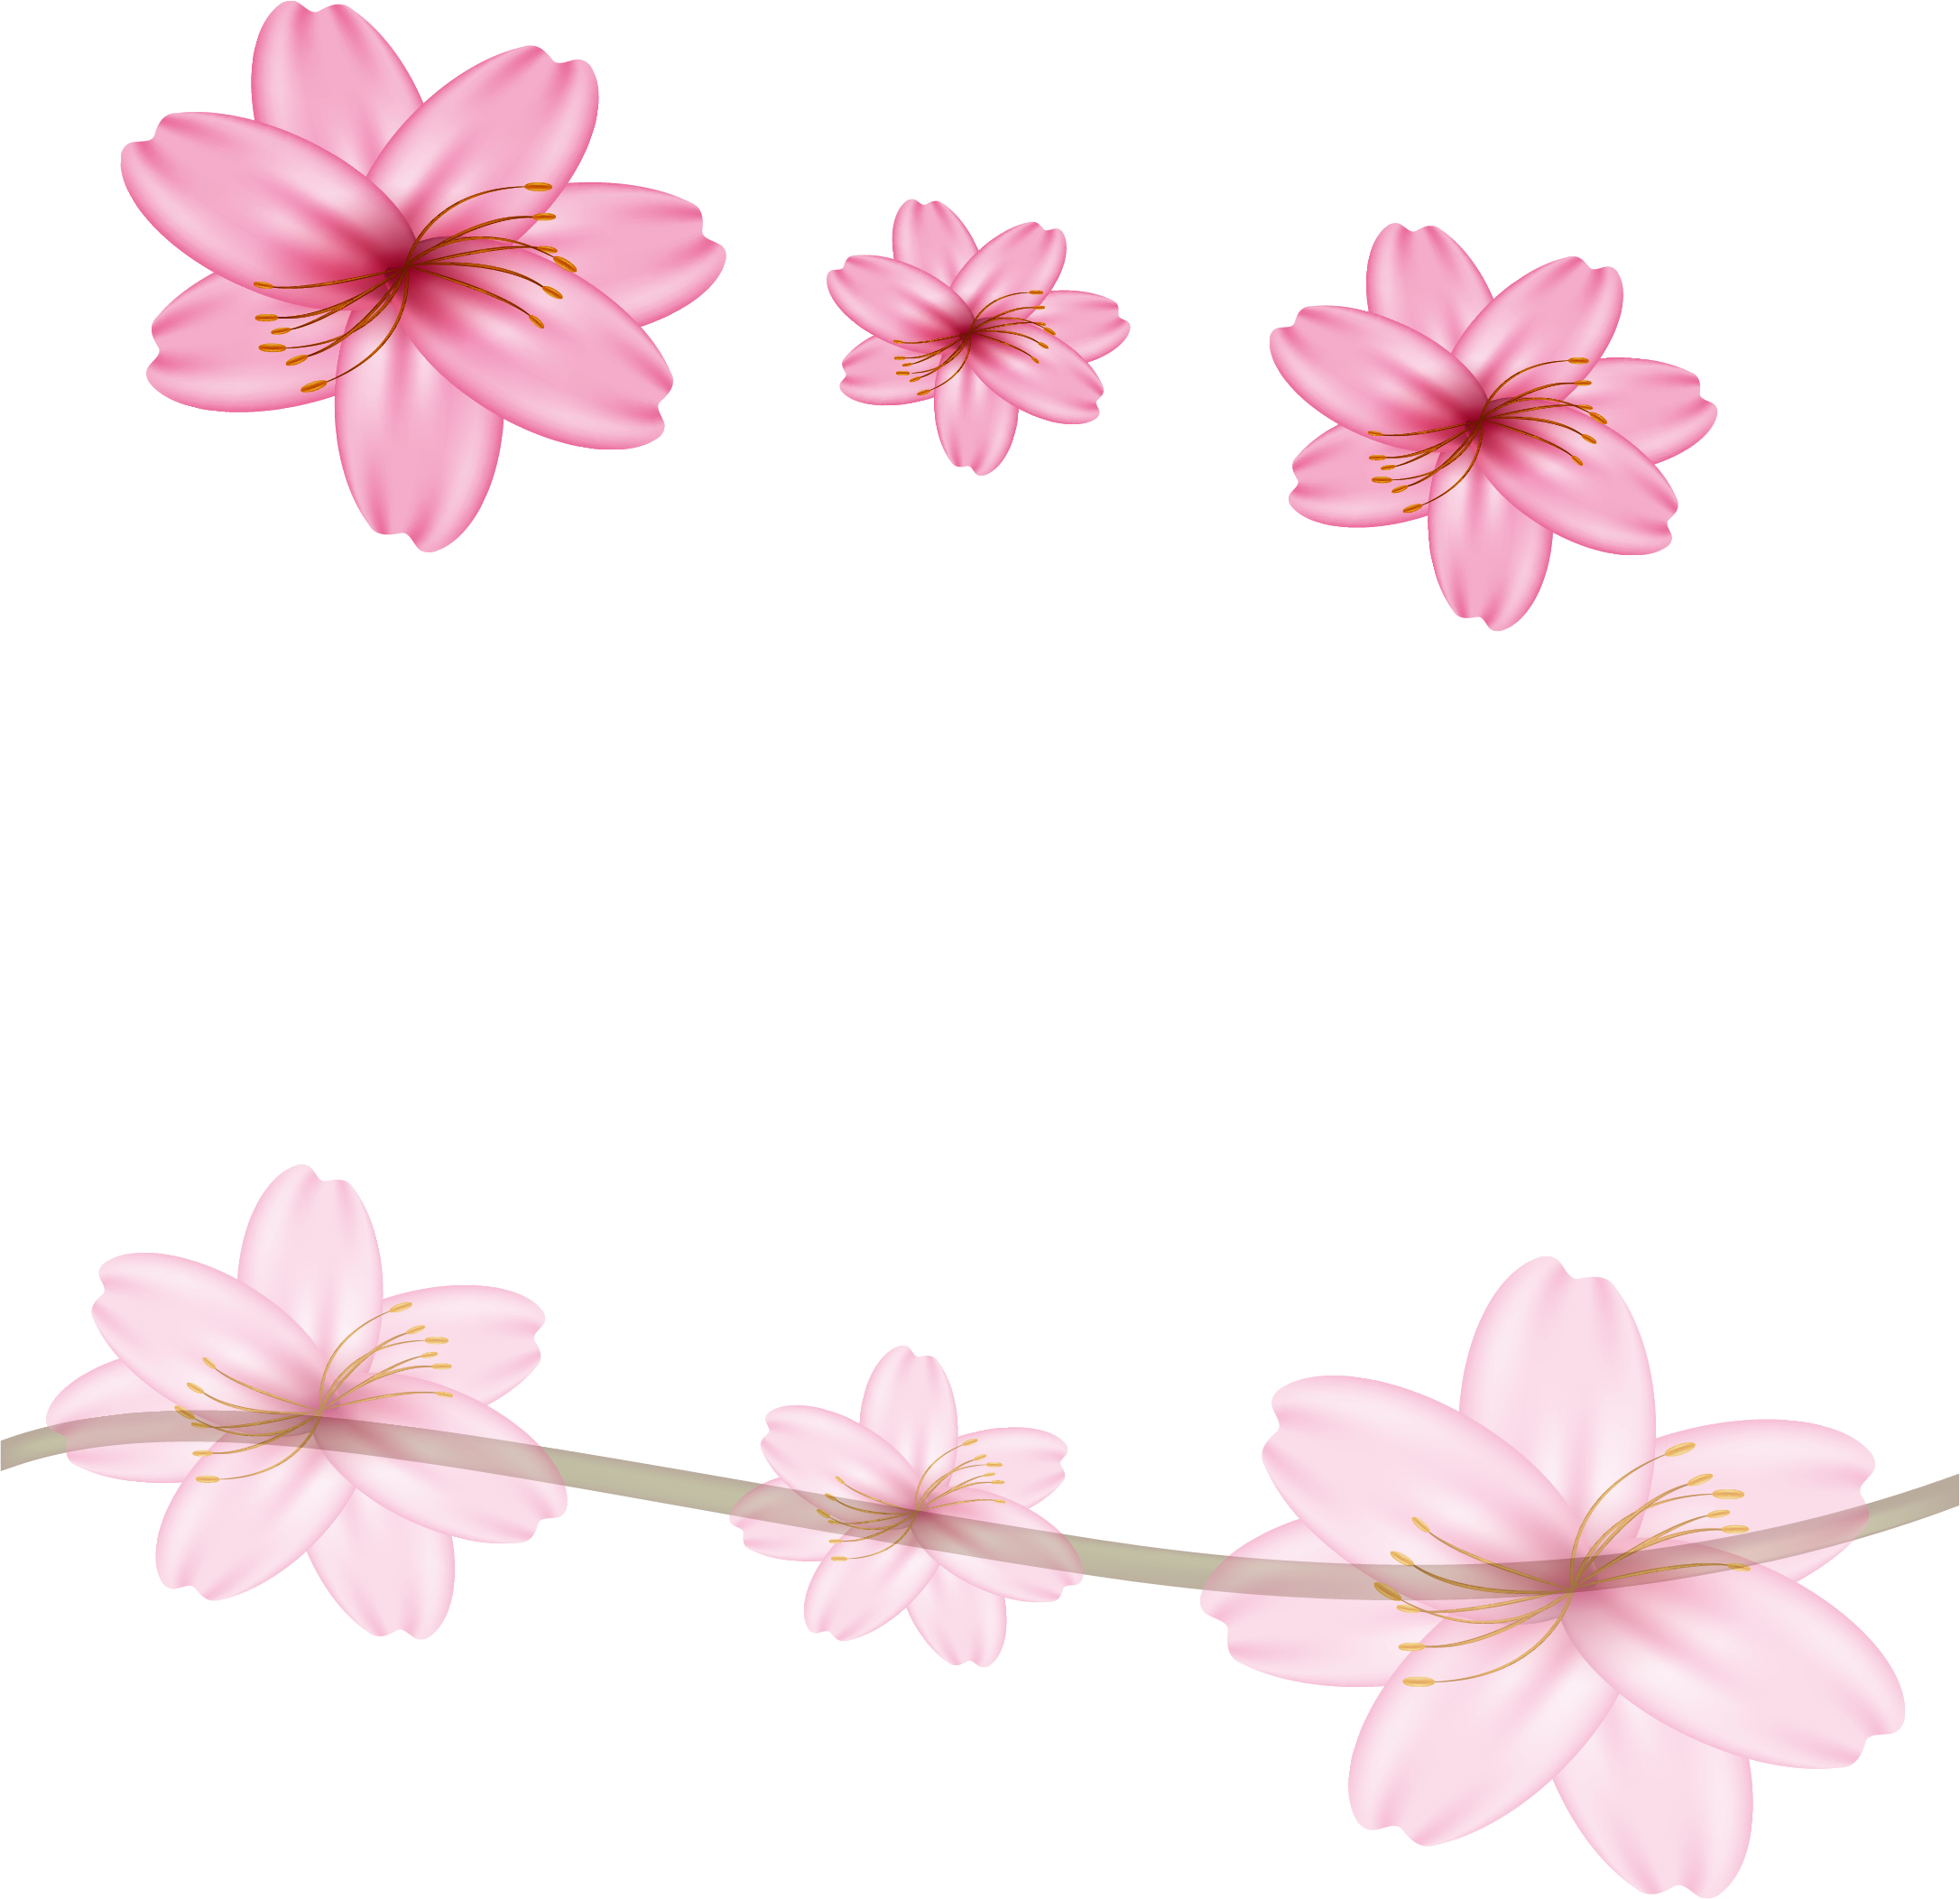 Floral Design Cherry Blossom Flower - Floral Design Cherry Blossom Flower (2172x2104)